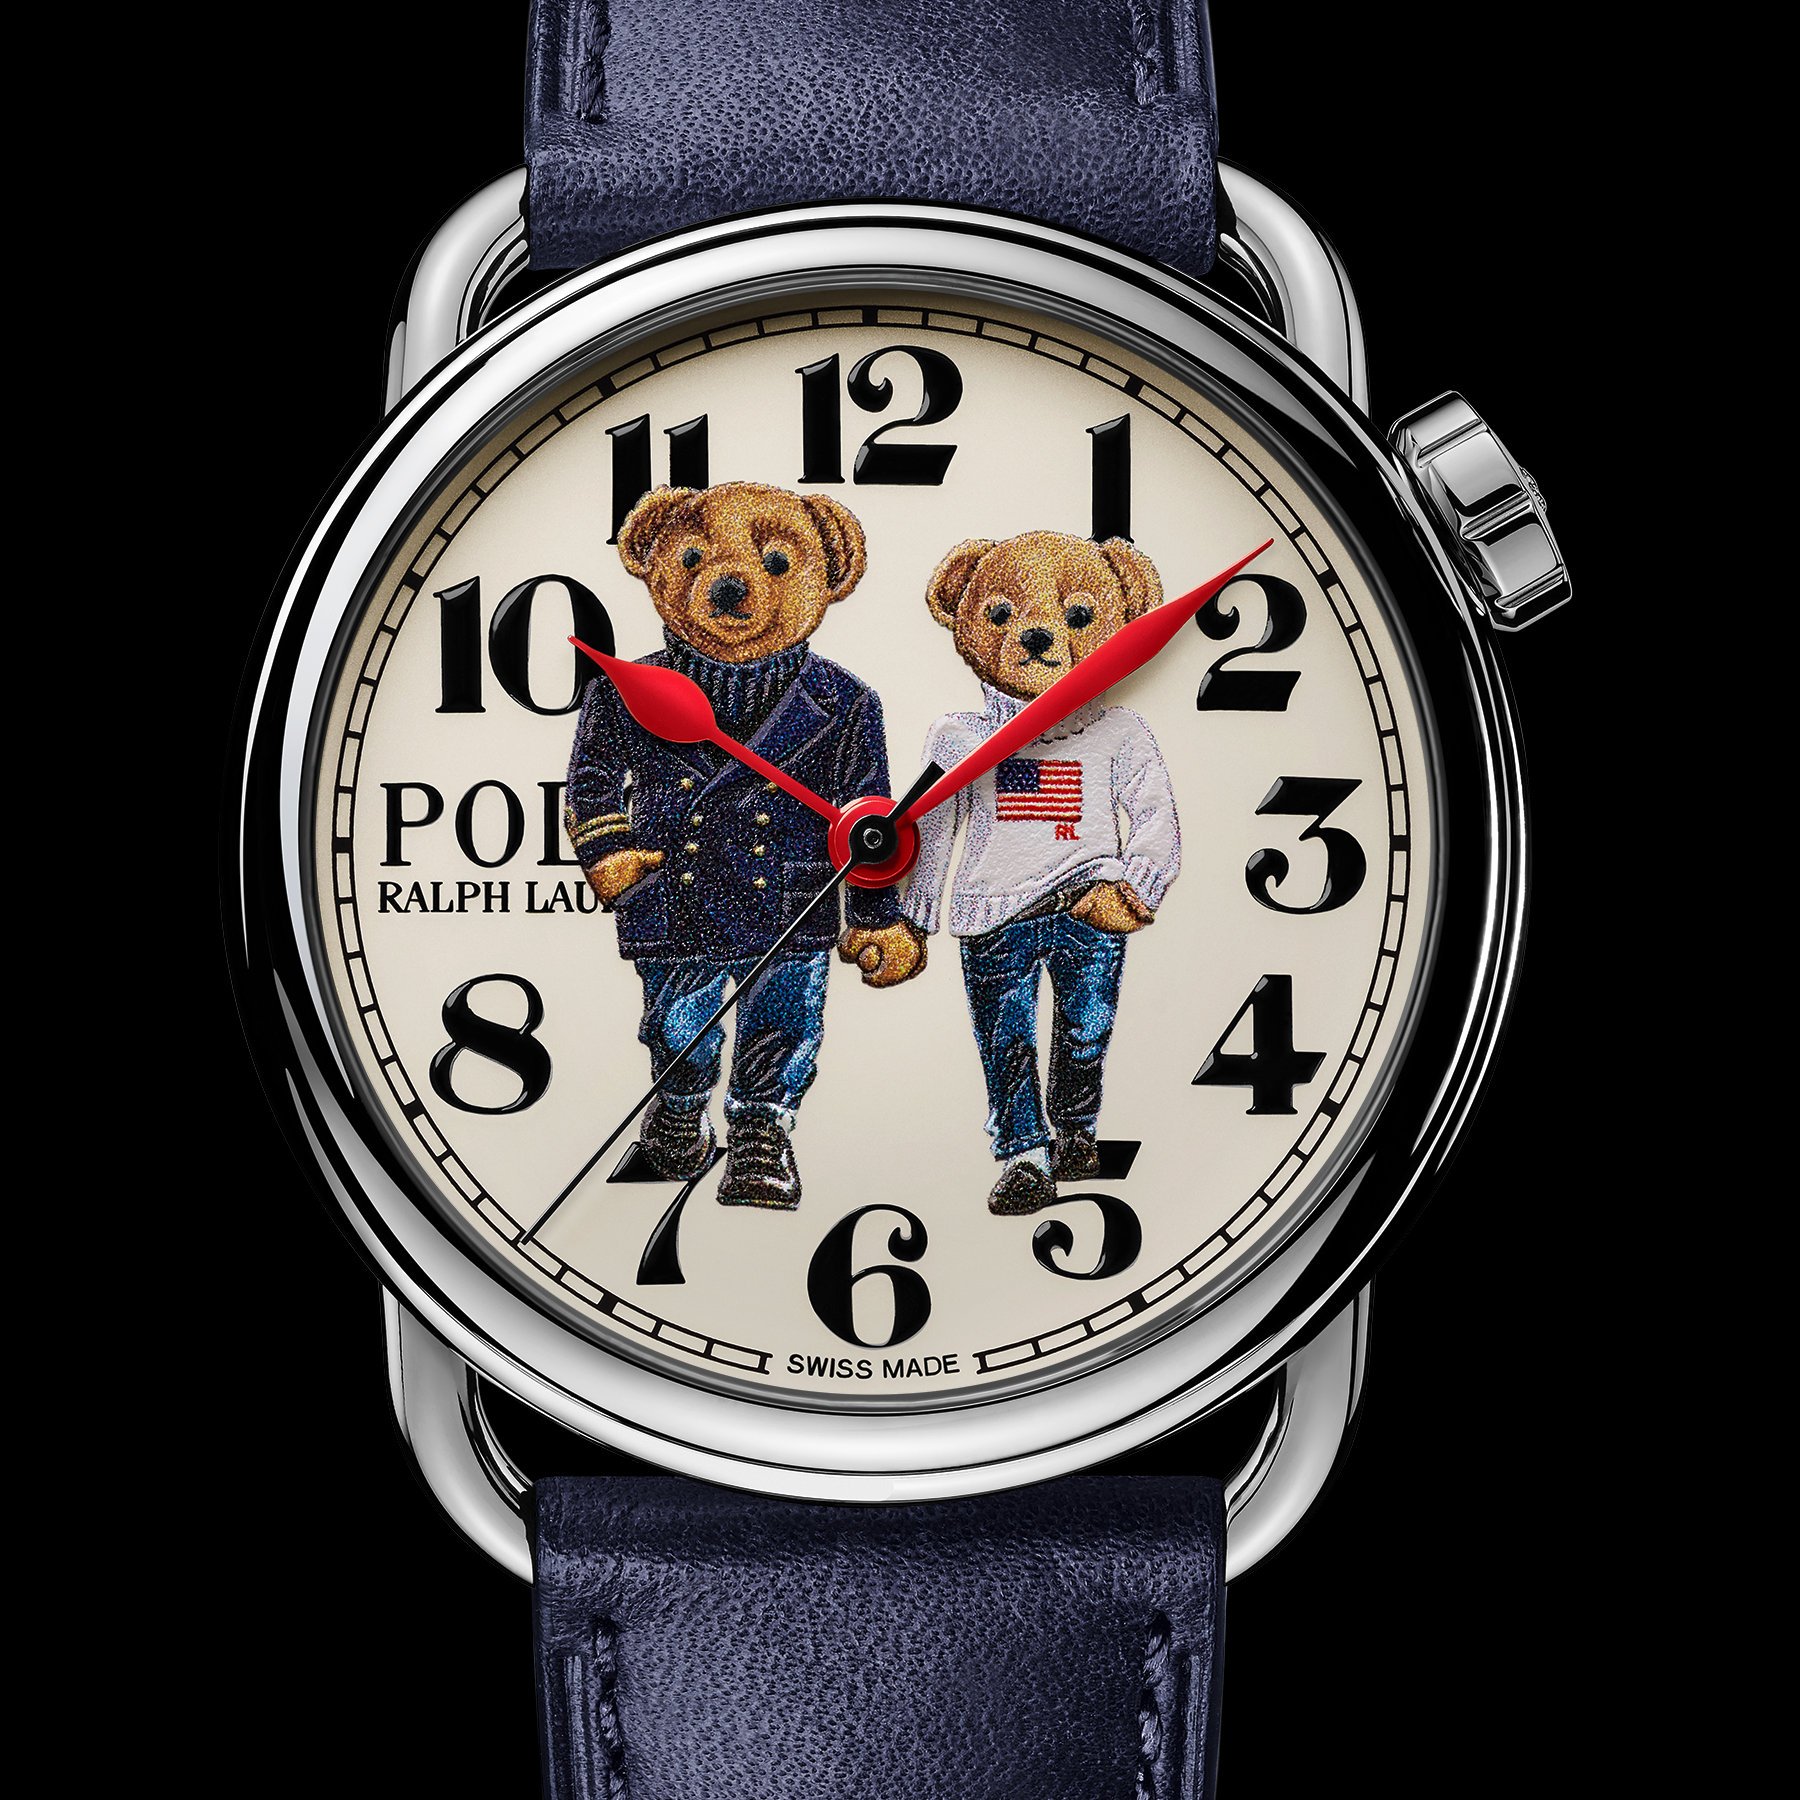 The Ralph Lauren Polo Bear Ralph & Ricky Bear Watch - Monochrome Watches